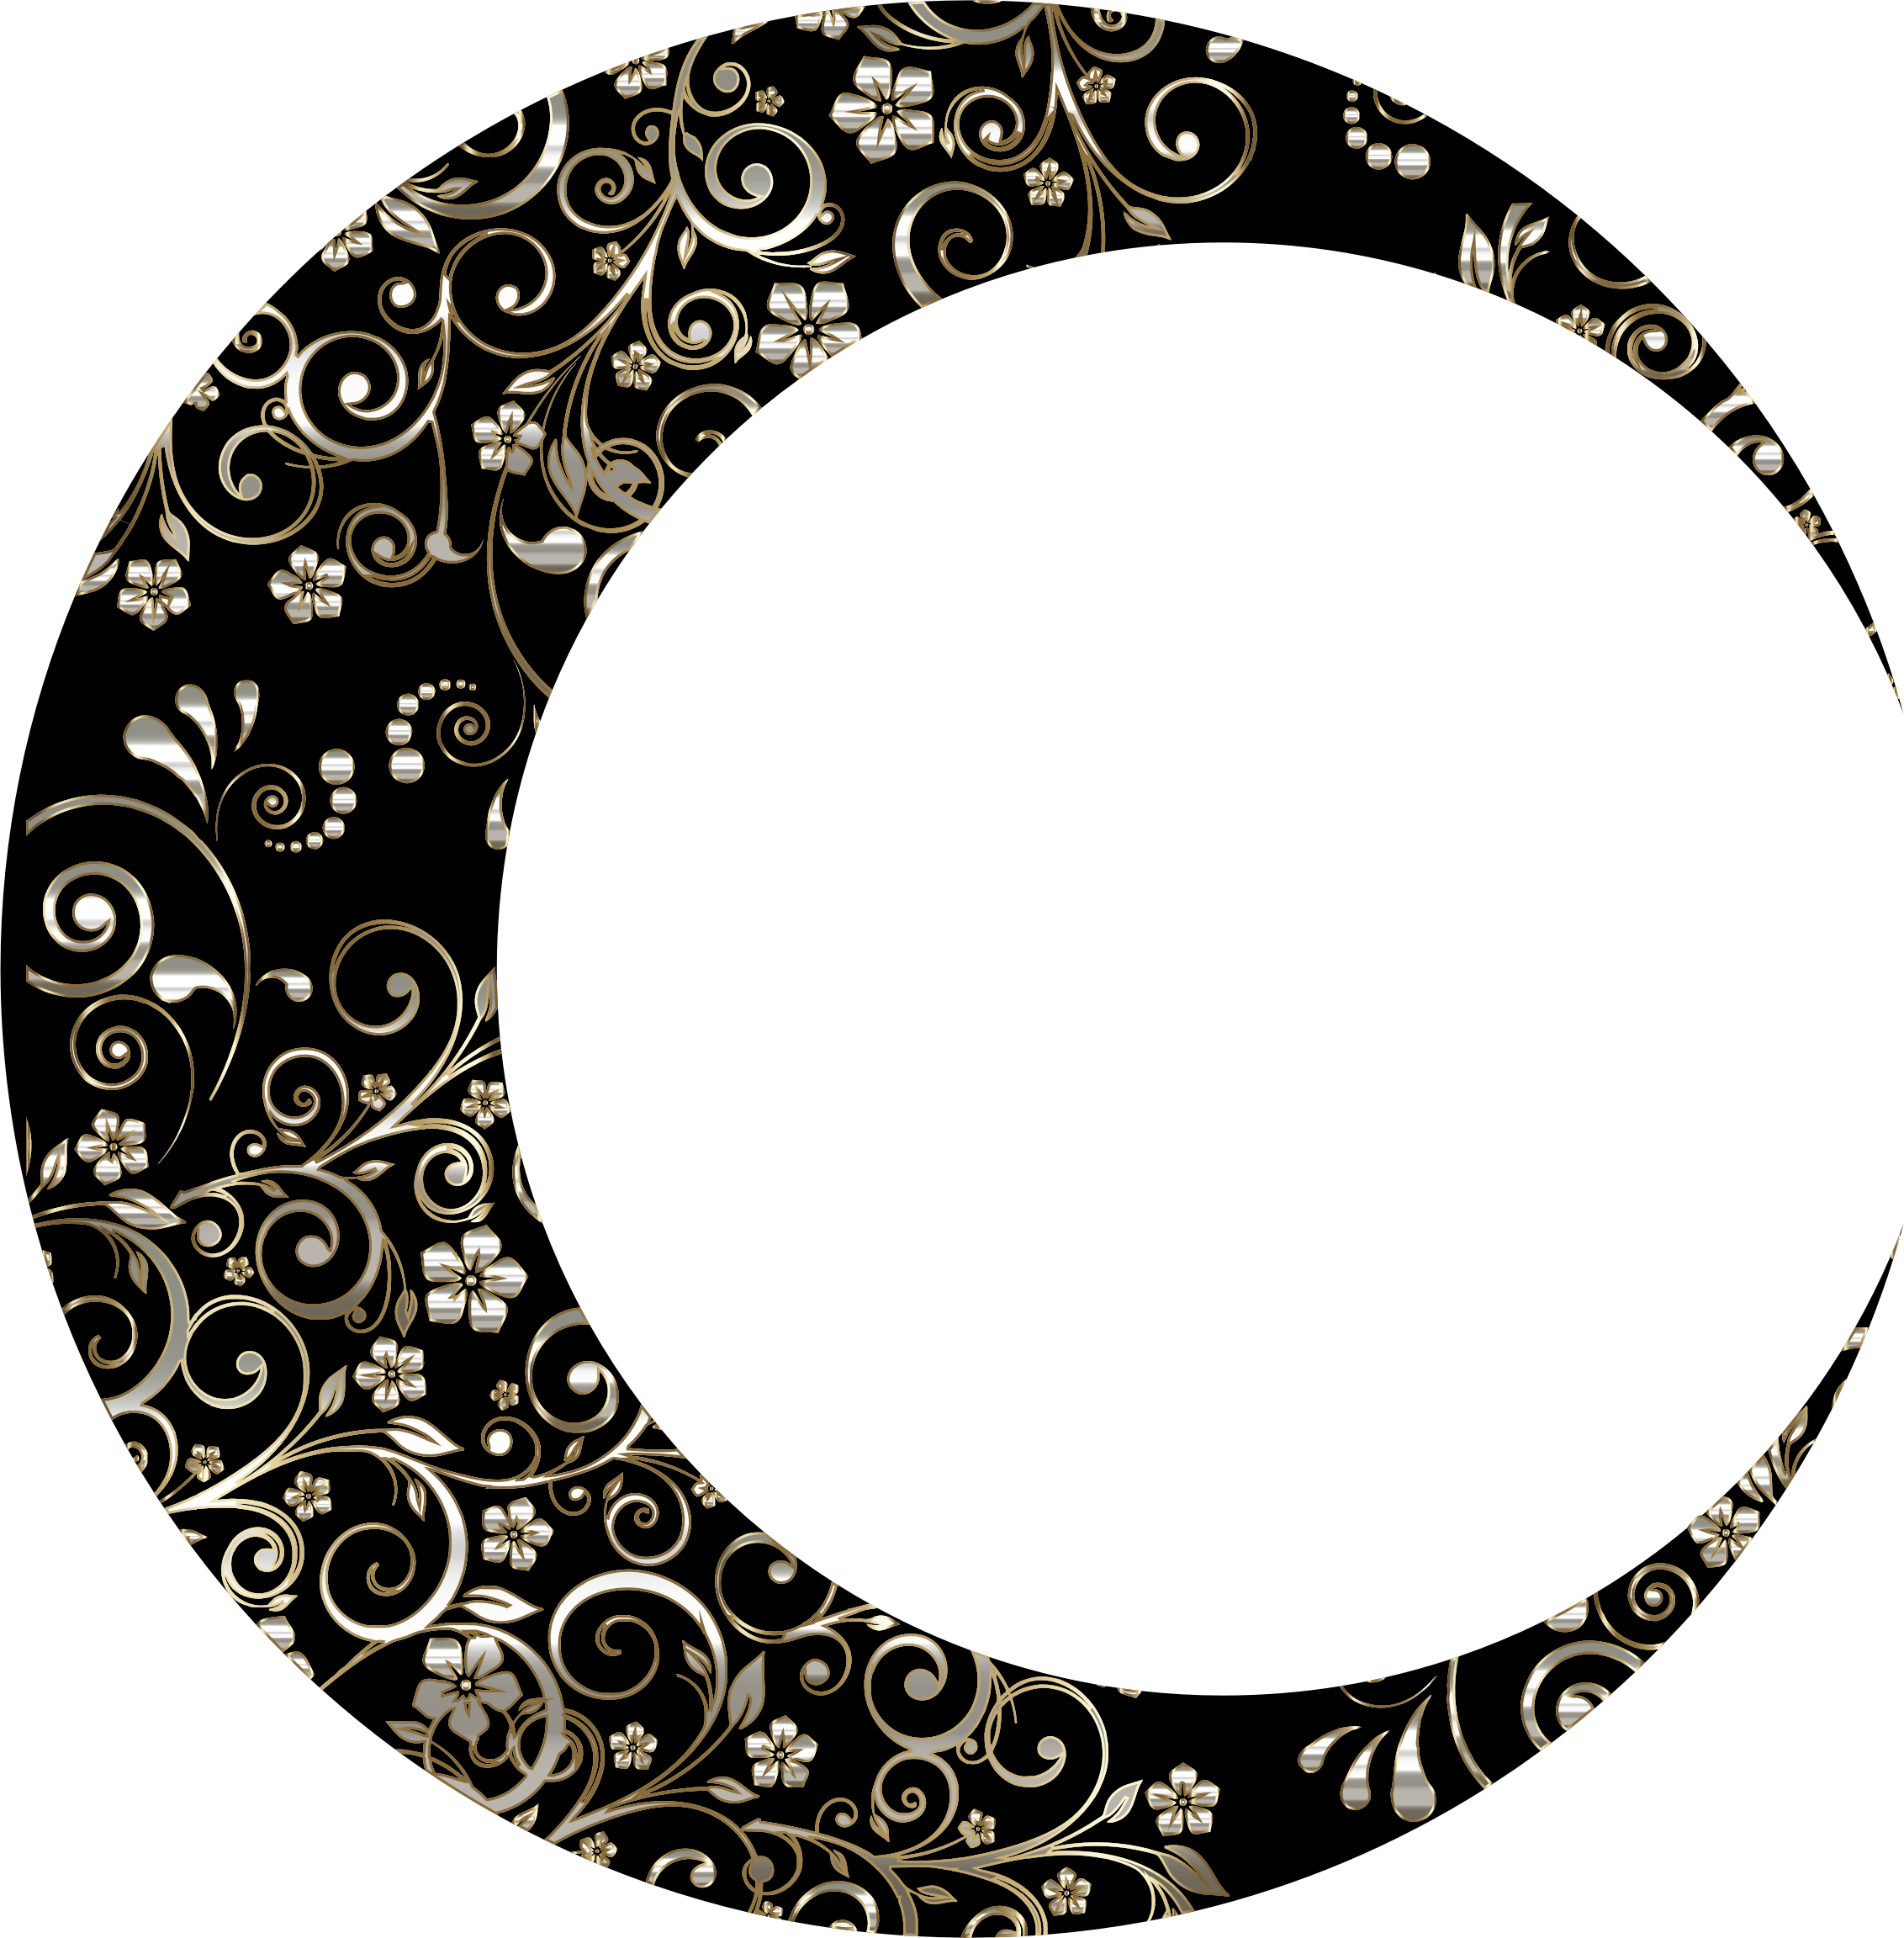 Floral Crescent Moon Mark Ii 11 - Floral Crescent Moon Mark Ii 11 (2264x2304)